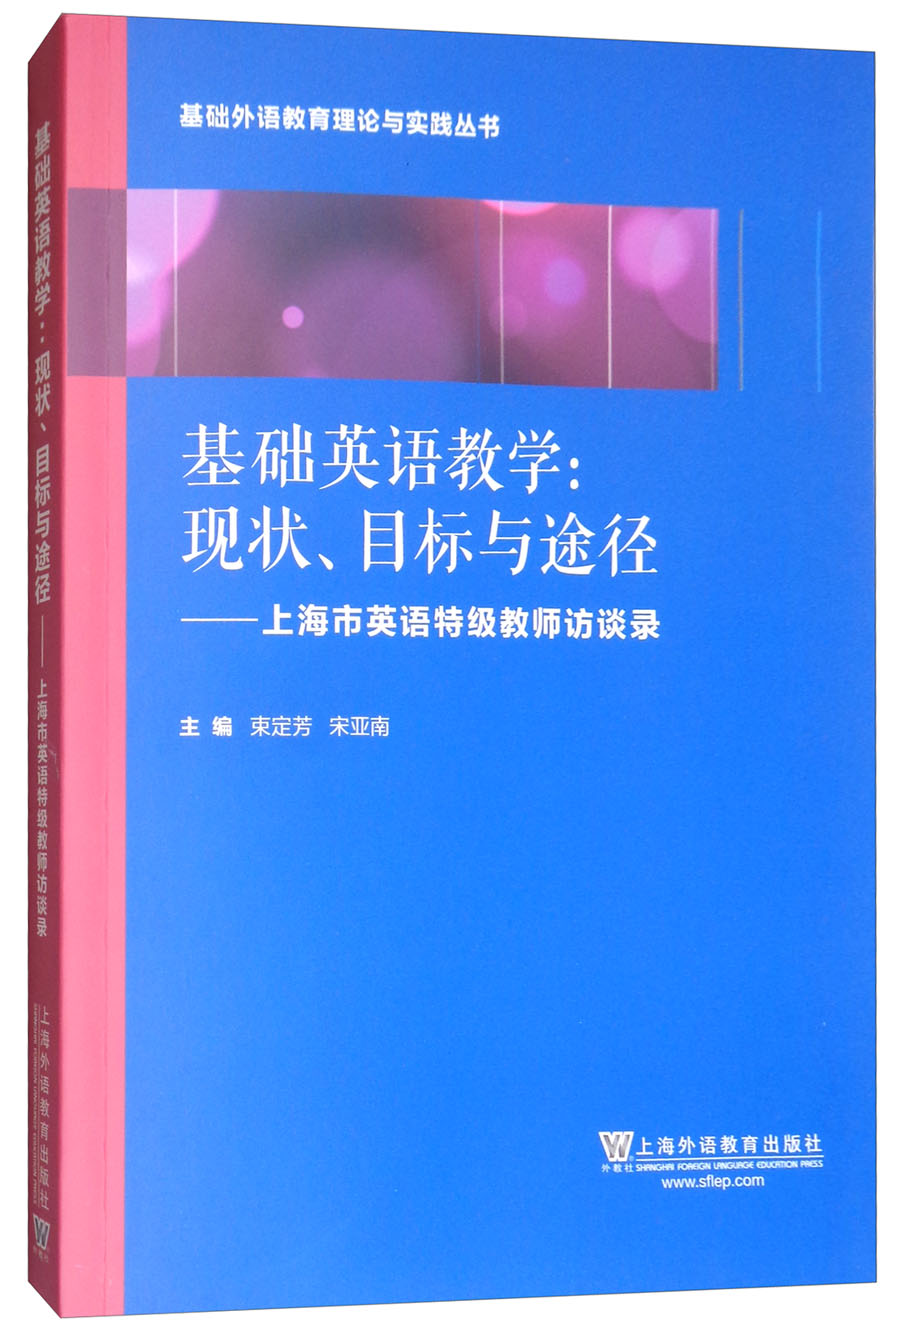 基础外语教育理论与实践丛书·基础英语教学·现状、目标与途径：上海英语特级教师访谈录 azw3格式下载